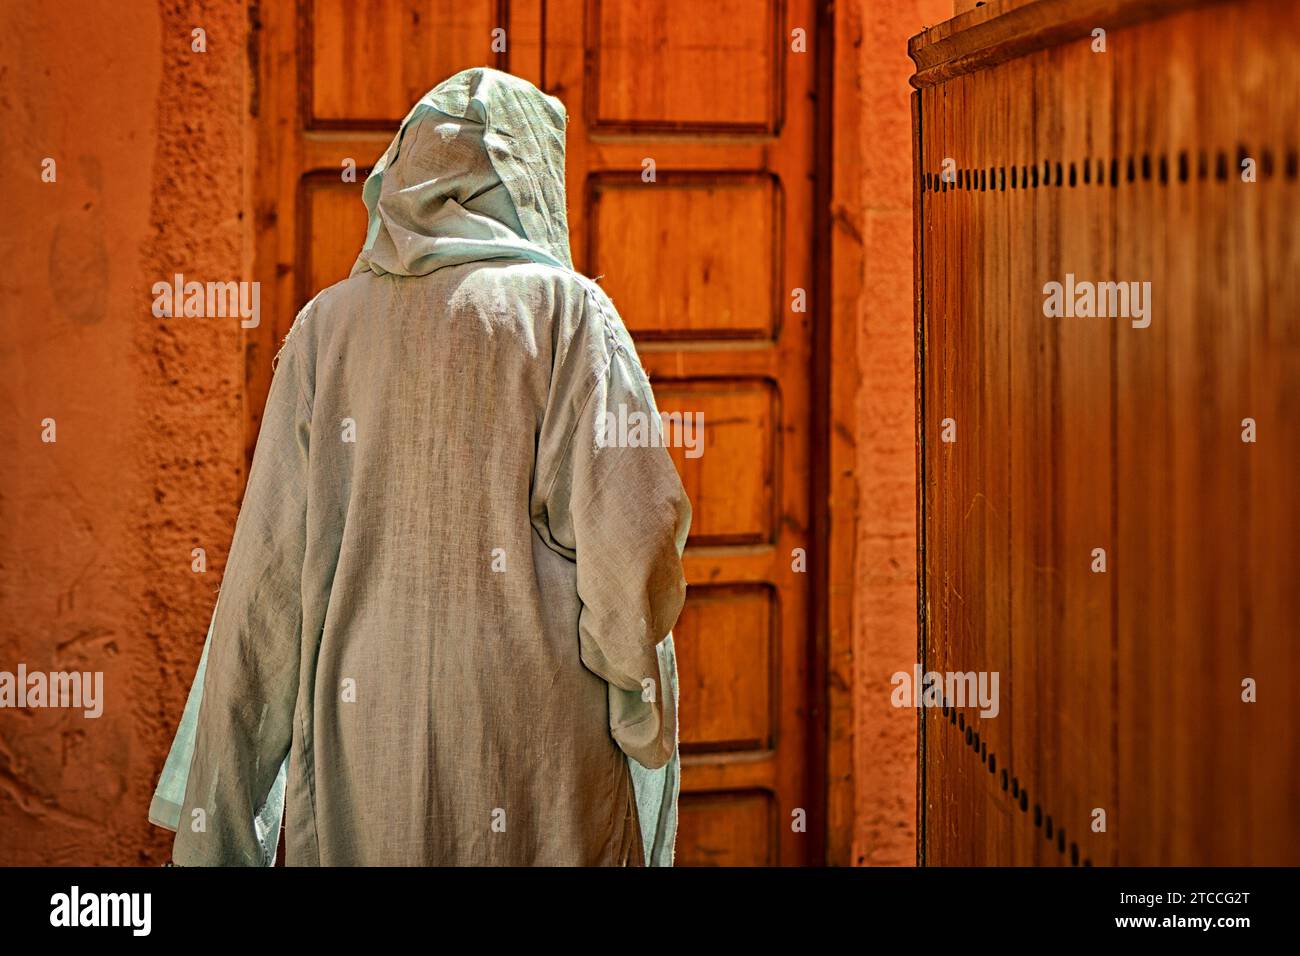 Marokkanische Frau, die Niqab trägt, läuft durch eine Gasse in Marrakesch oder Marrakesch Medina. Traditionelle islamische Frauenkleidung. Stockfoto